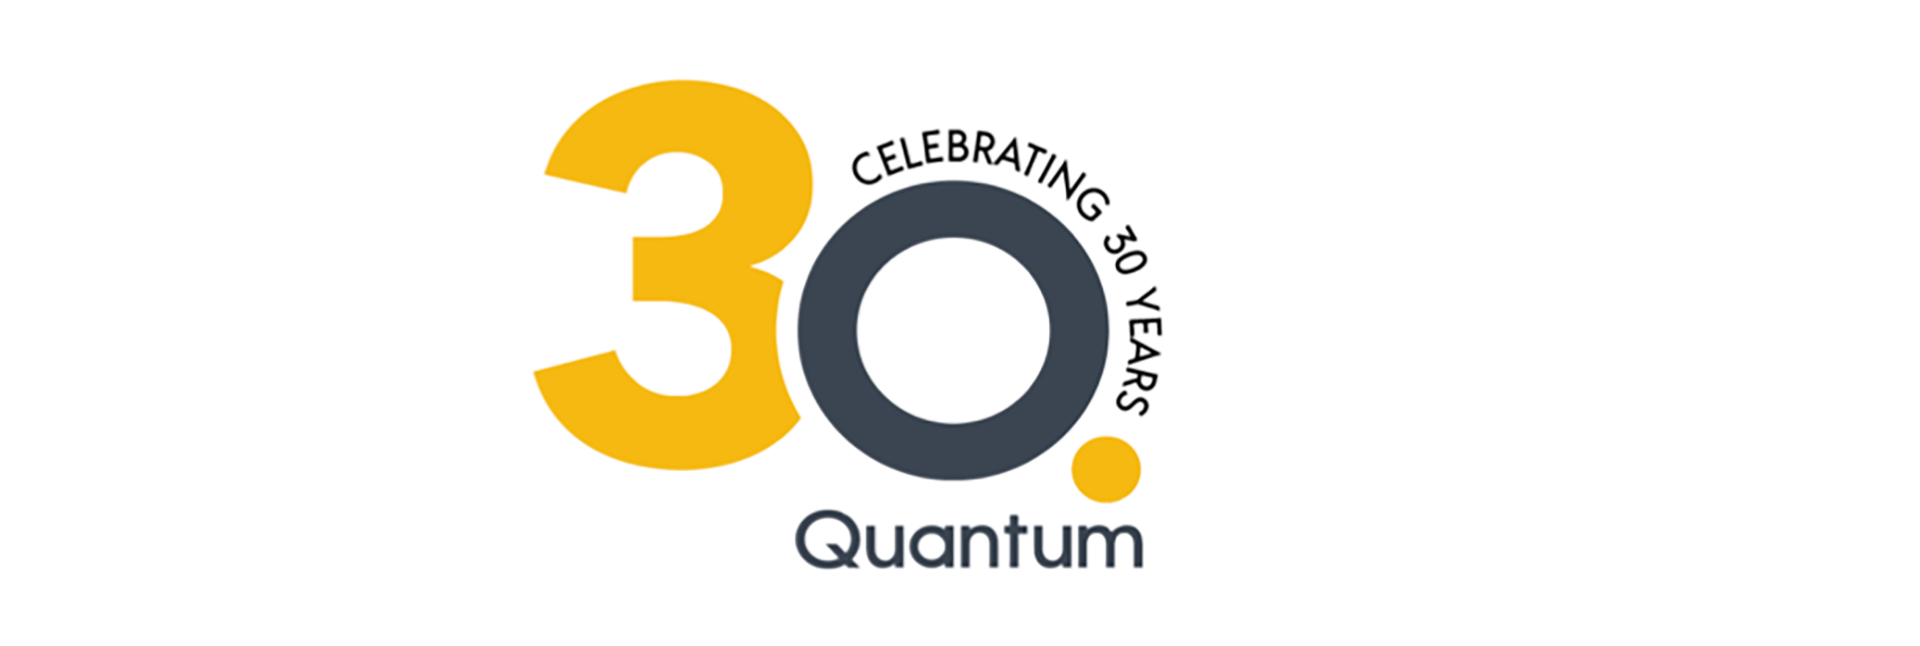 Quantum celebrates 30 years _Logo